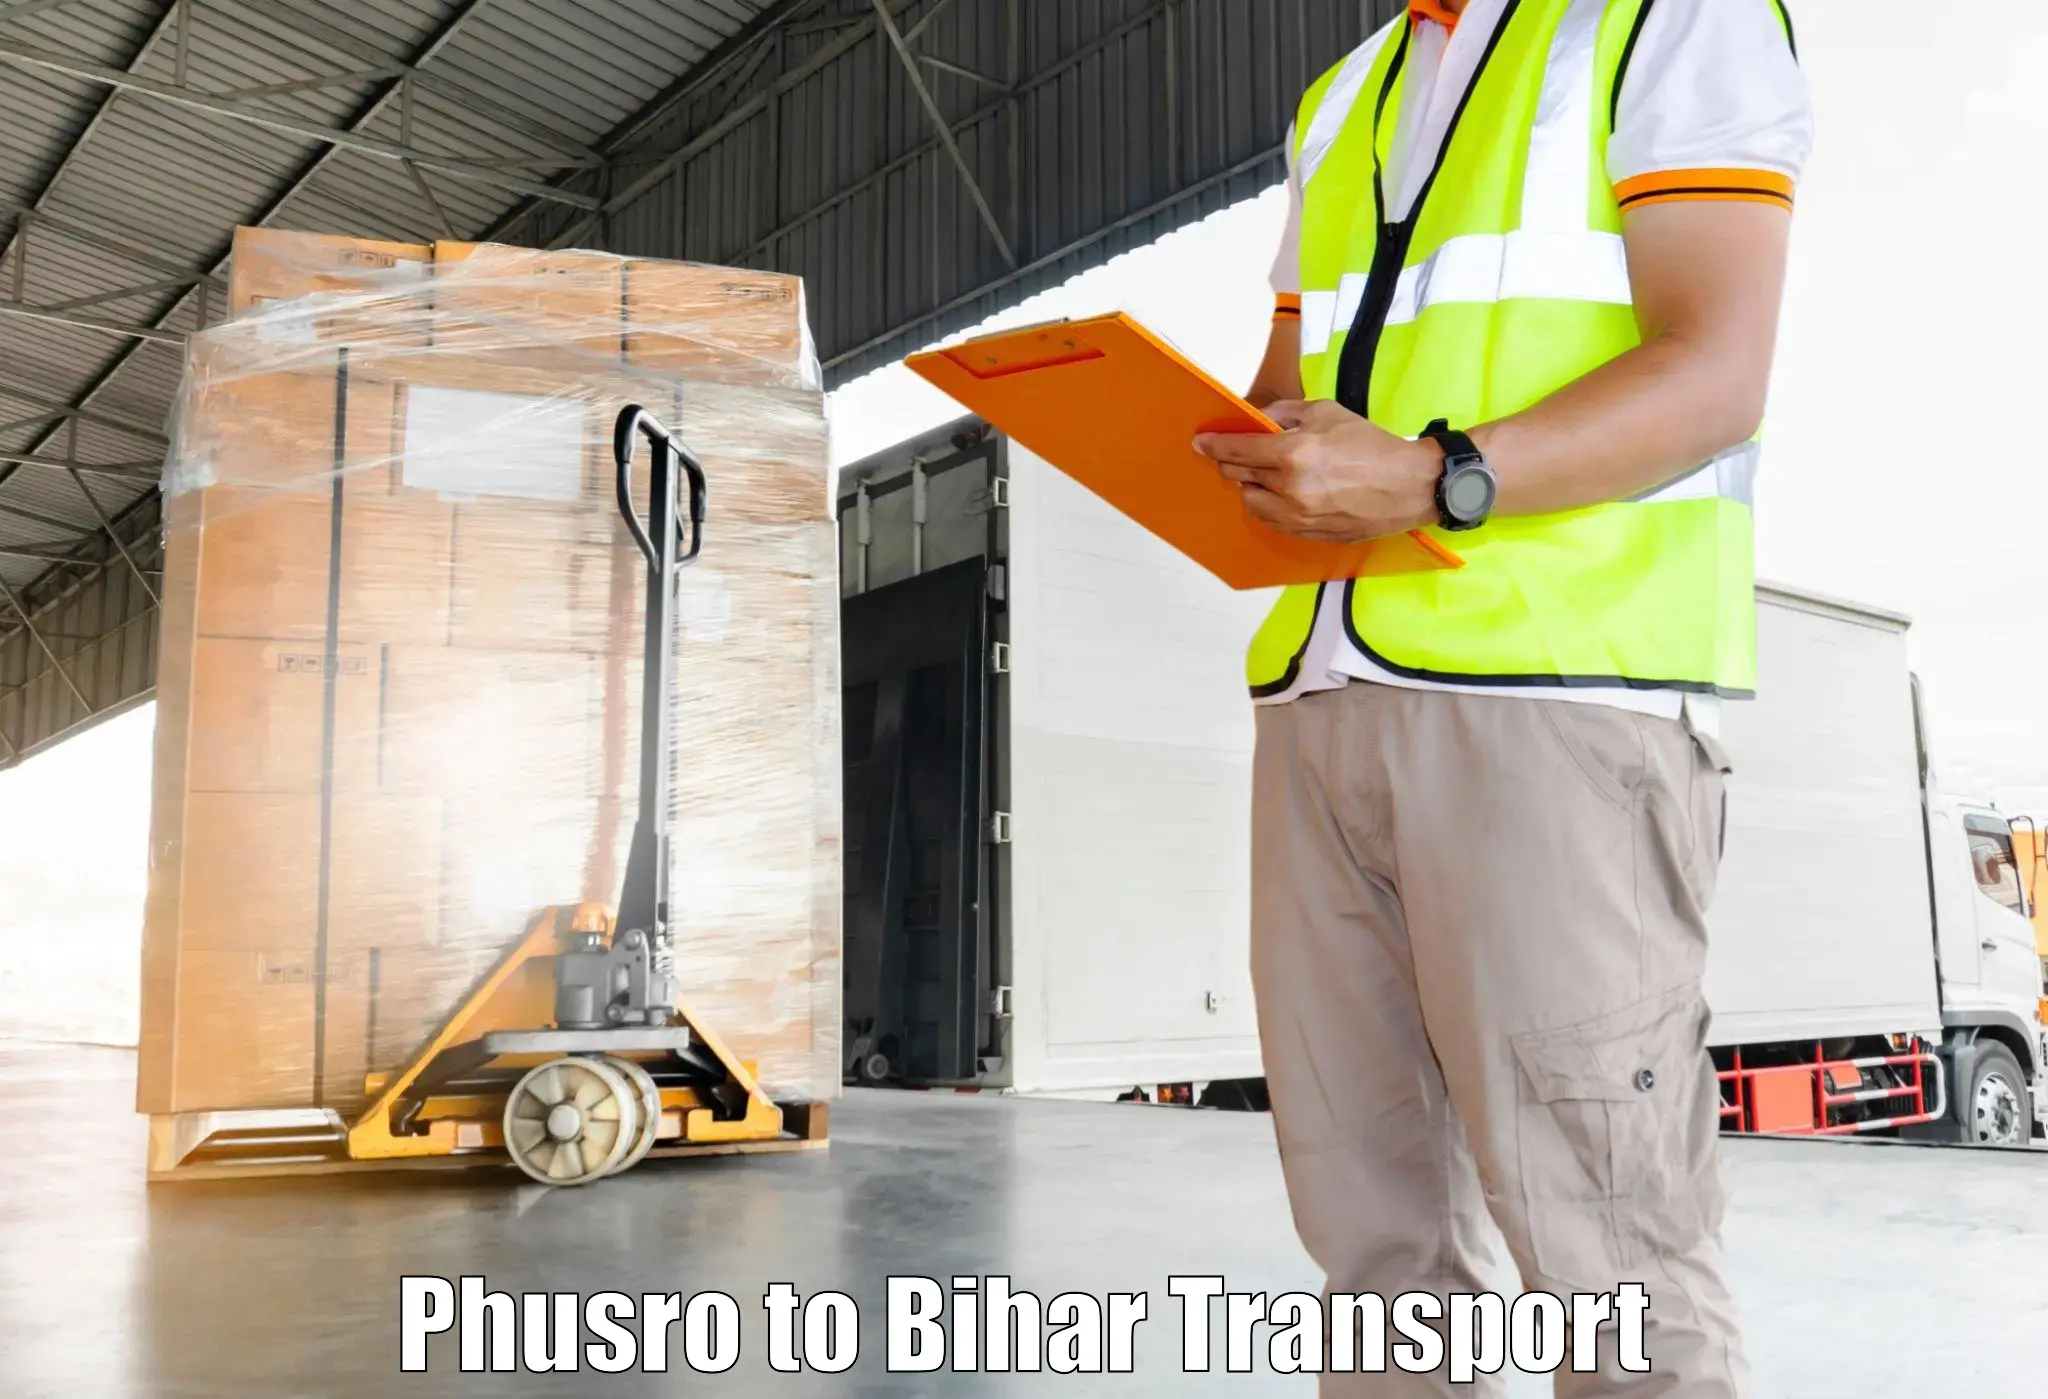 Transport in sharing Phusro to Simrahi Bazar